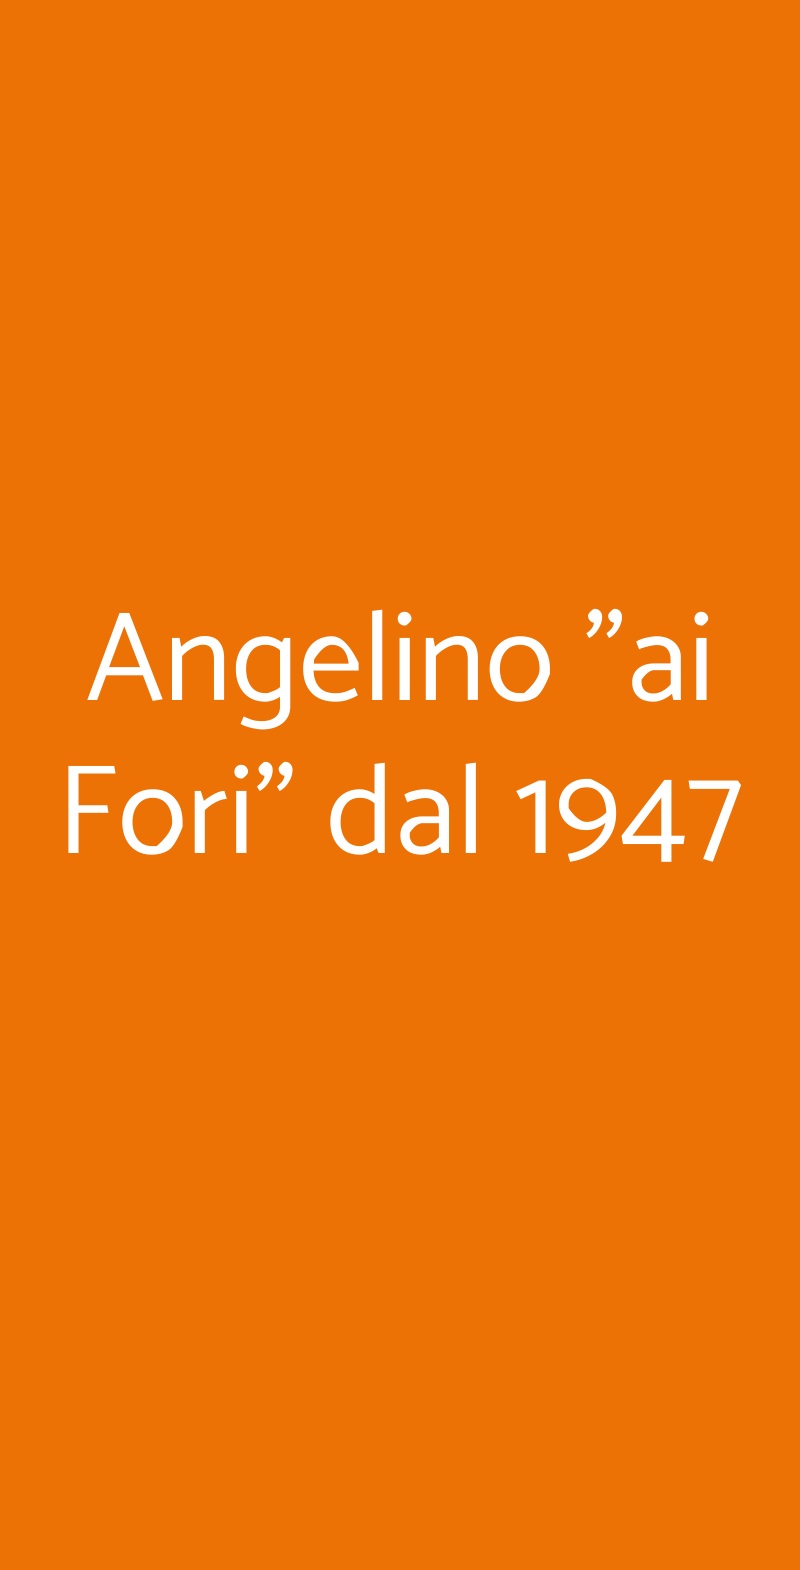 Angelino "ai Fori" dal 1947 Roma menù 1 pagina